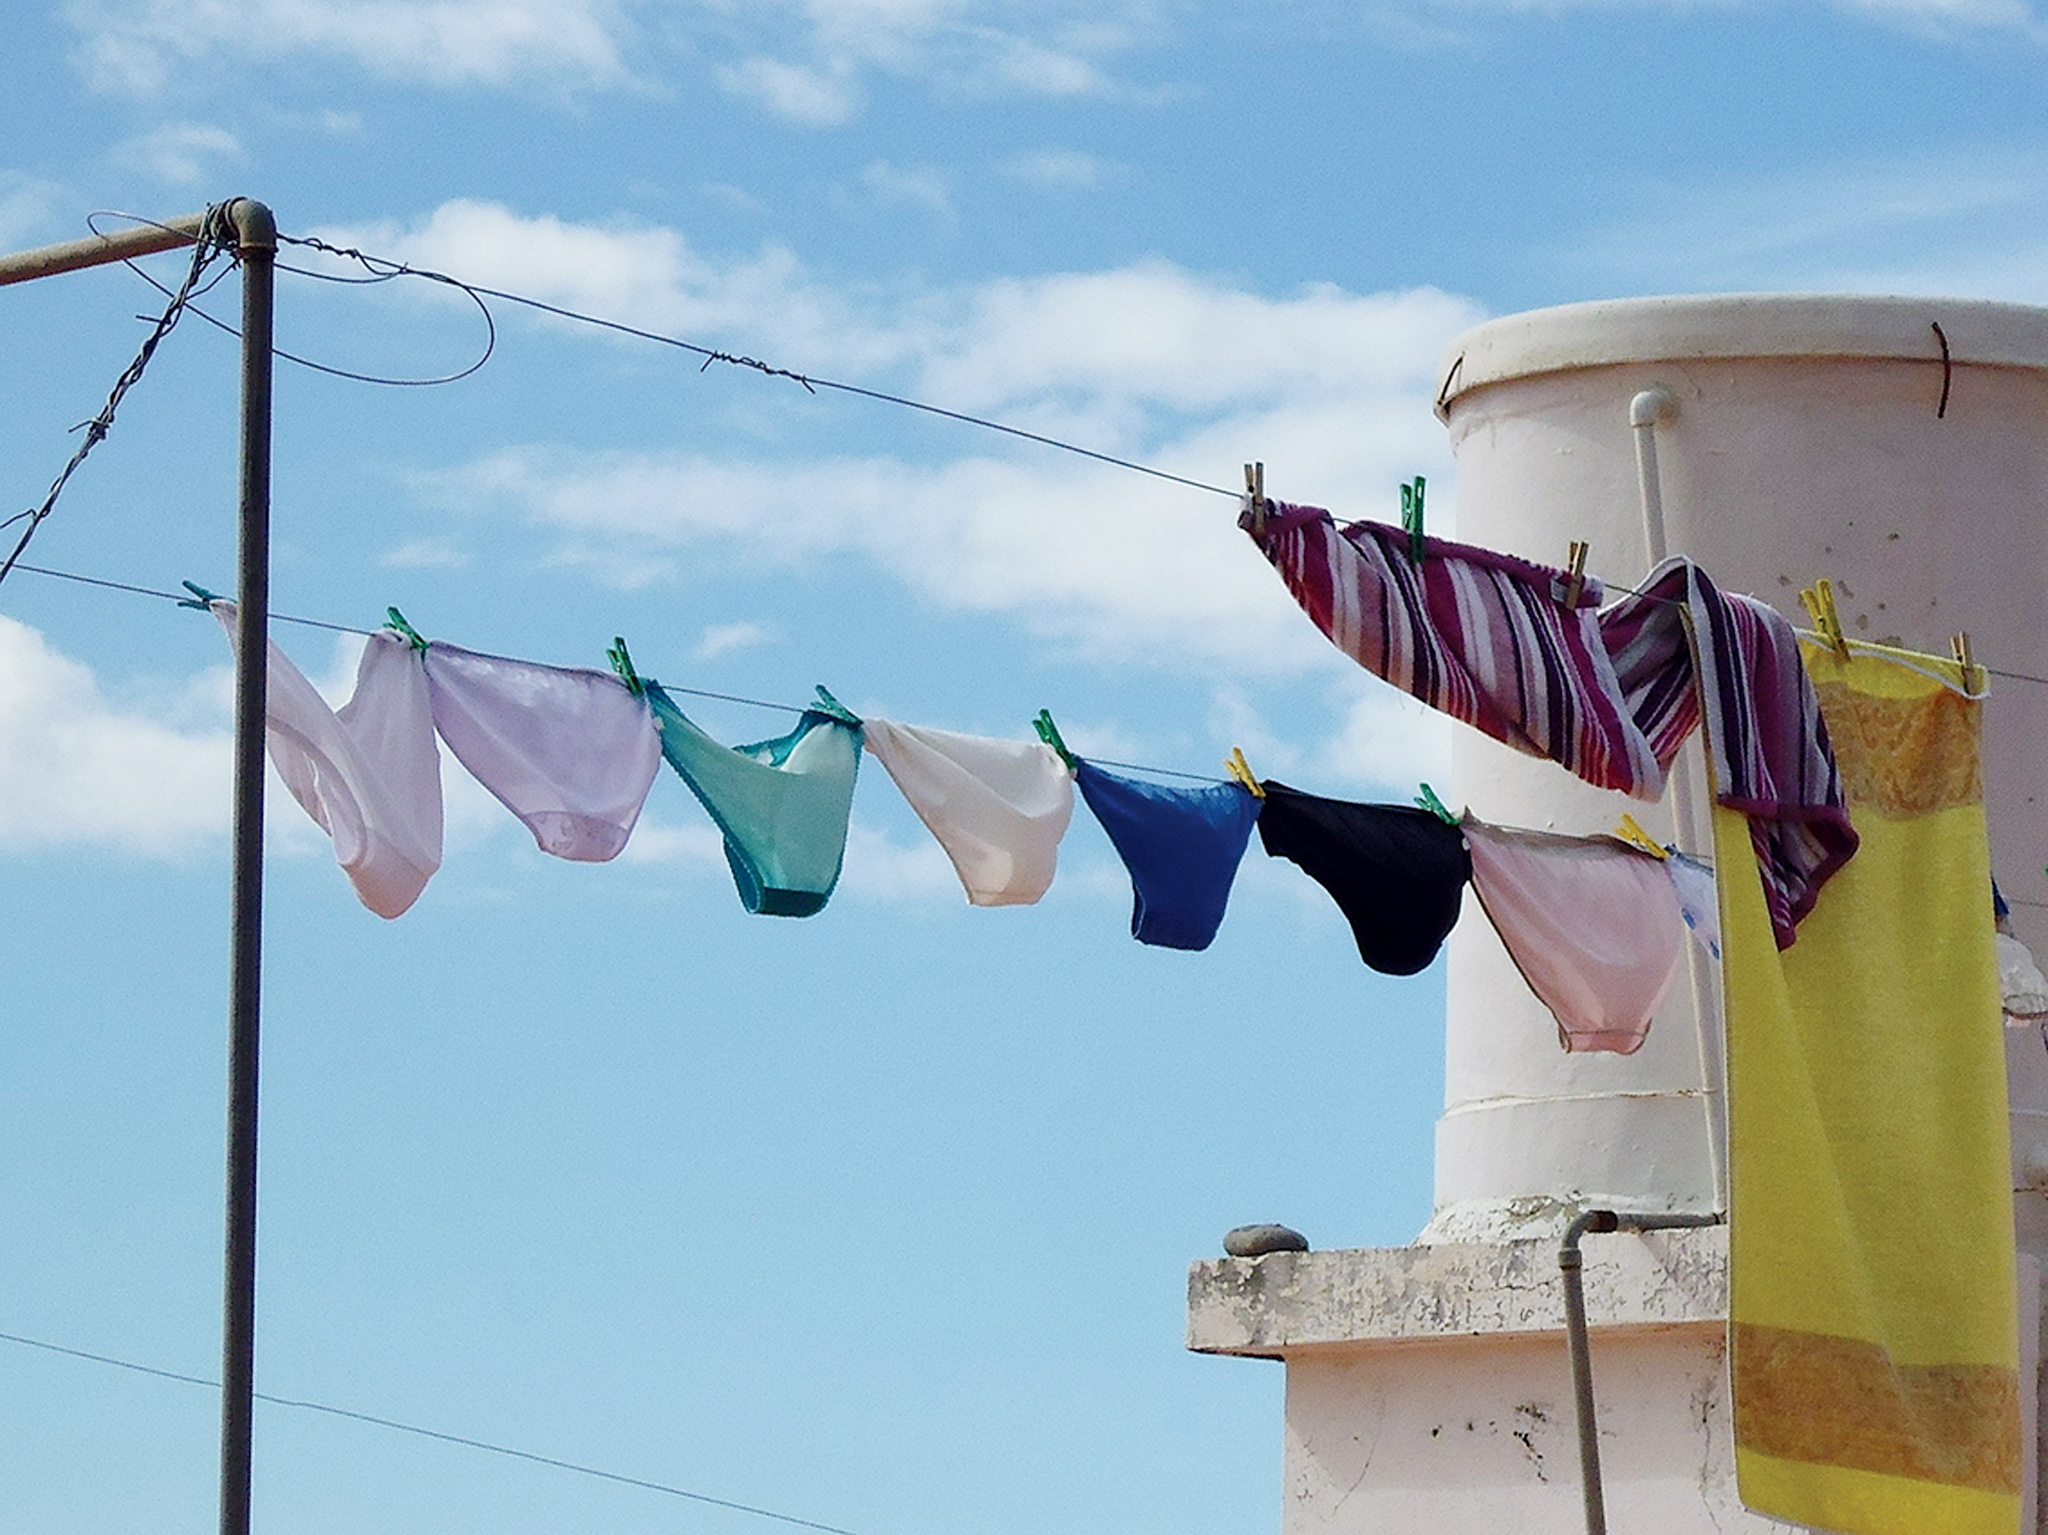 清洗內褲要謹記三原則「洗得乾淨、沖得徹底、晾得乾燥」。